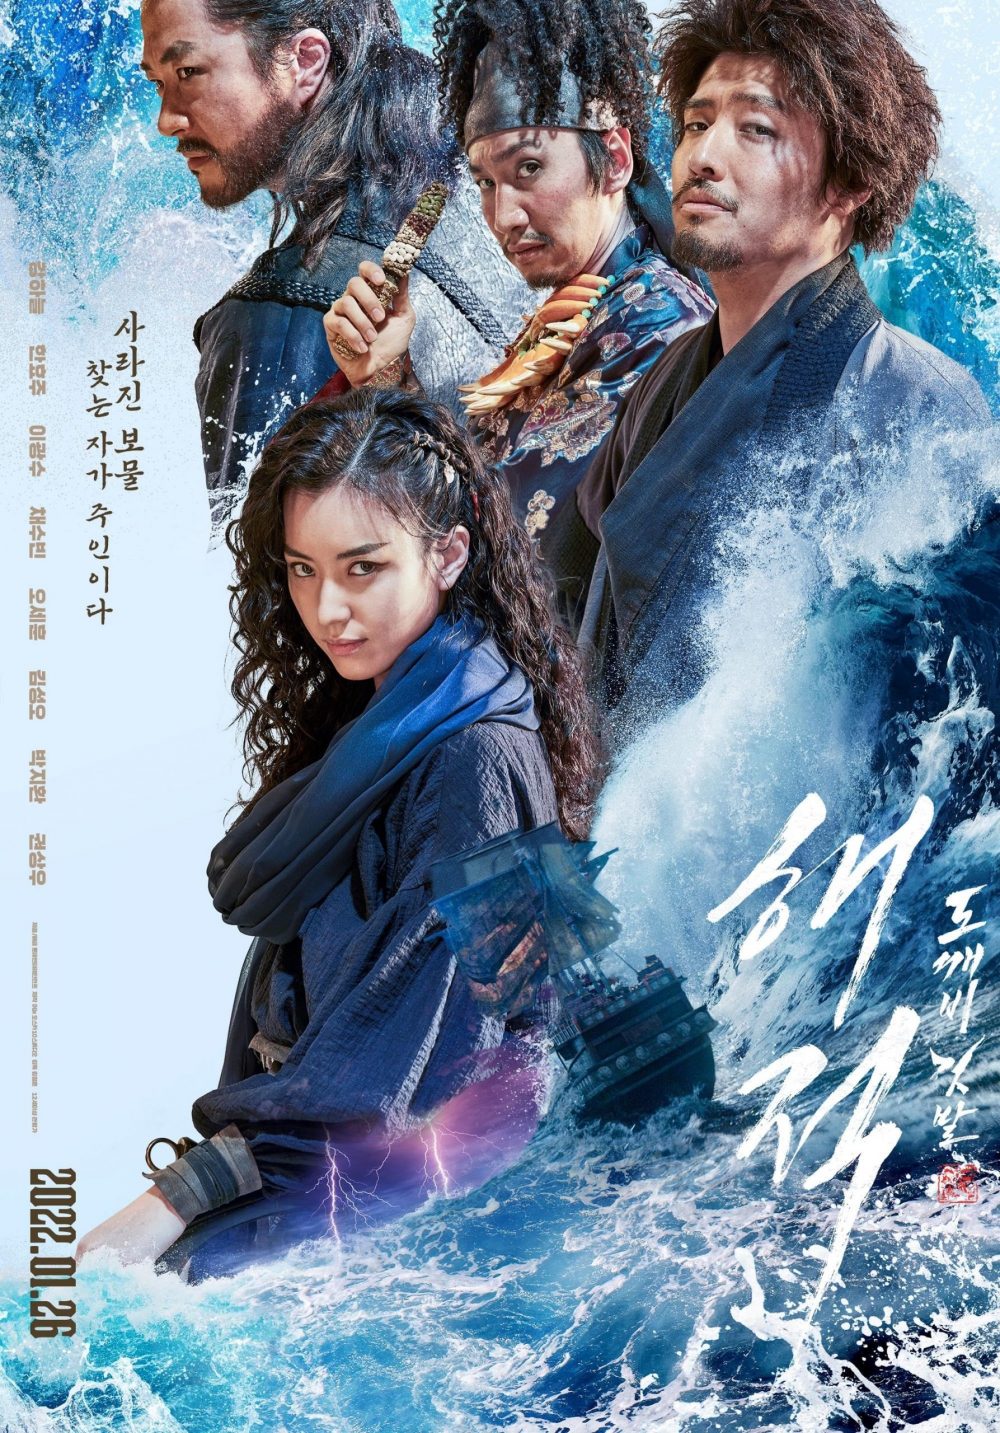 Phim mới của Kang Ha Neul: Hải tặc 2: Kho báu hoàng gia cuối cùng - The Pirates 2: The Last Royal Treasure (2022)